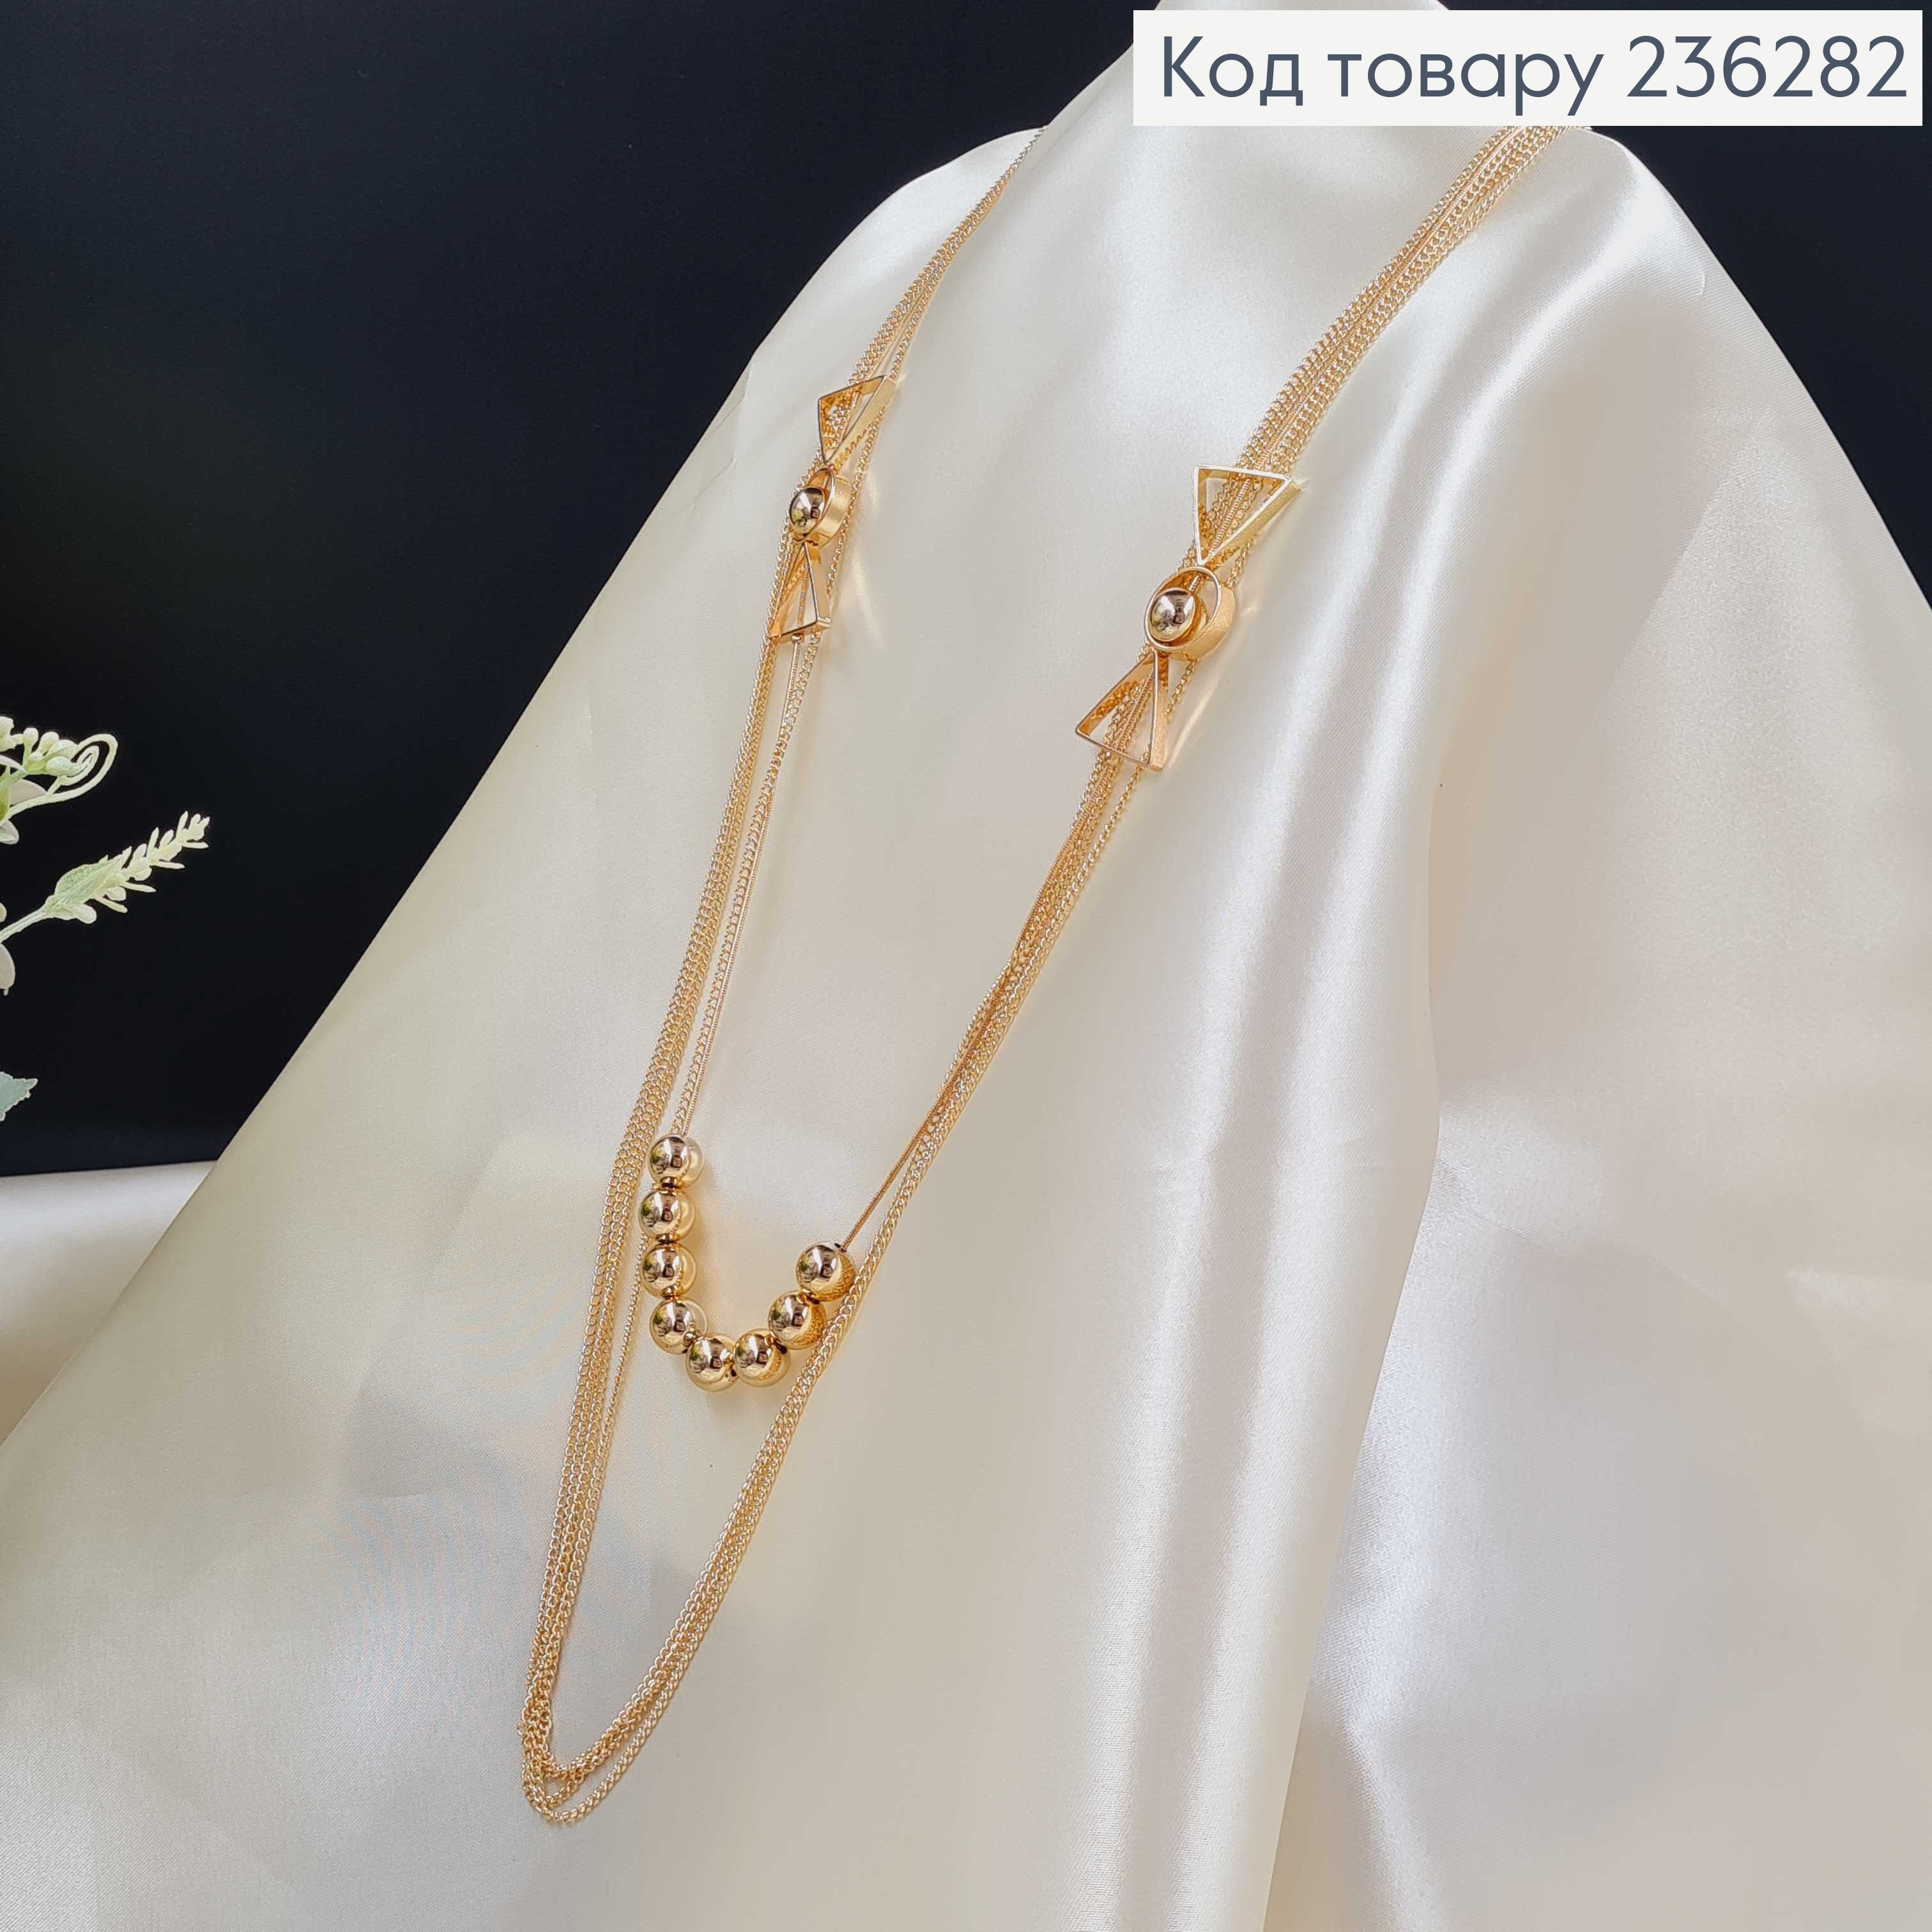 Біжутерія на шию "Символіка", (довжина 85+4см) колір золотий   Fashion Jewelry 236282 фото 2